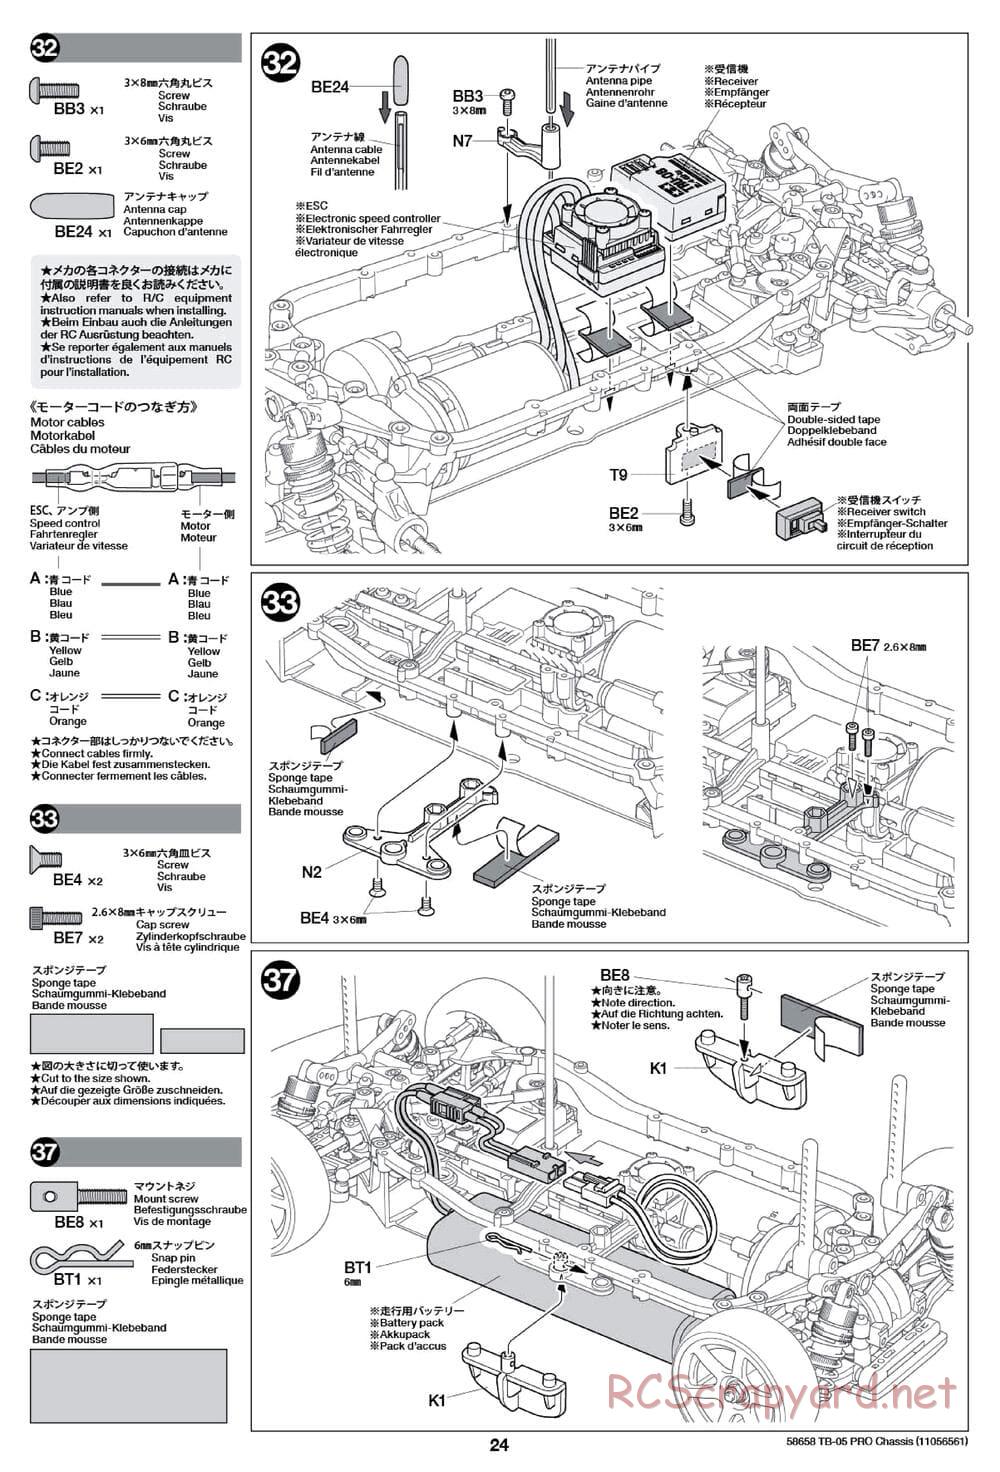 Tamiya - TB-05 Pro Chassis - Manual - Page 24